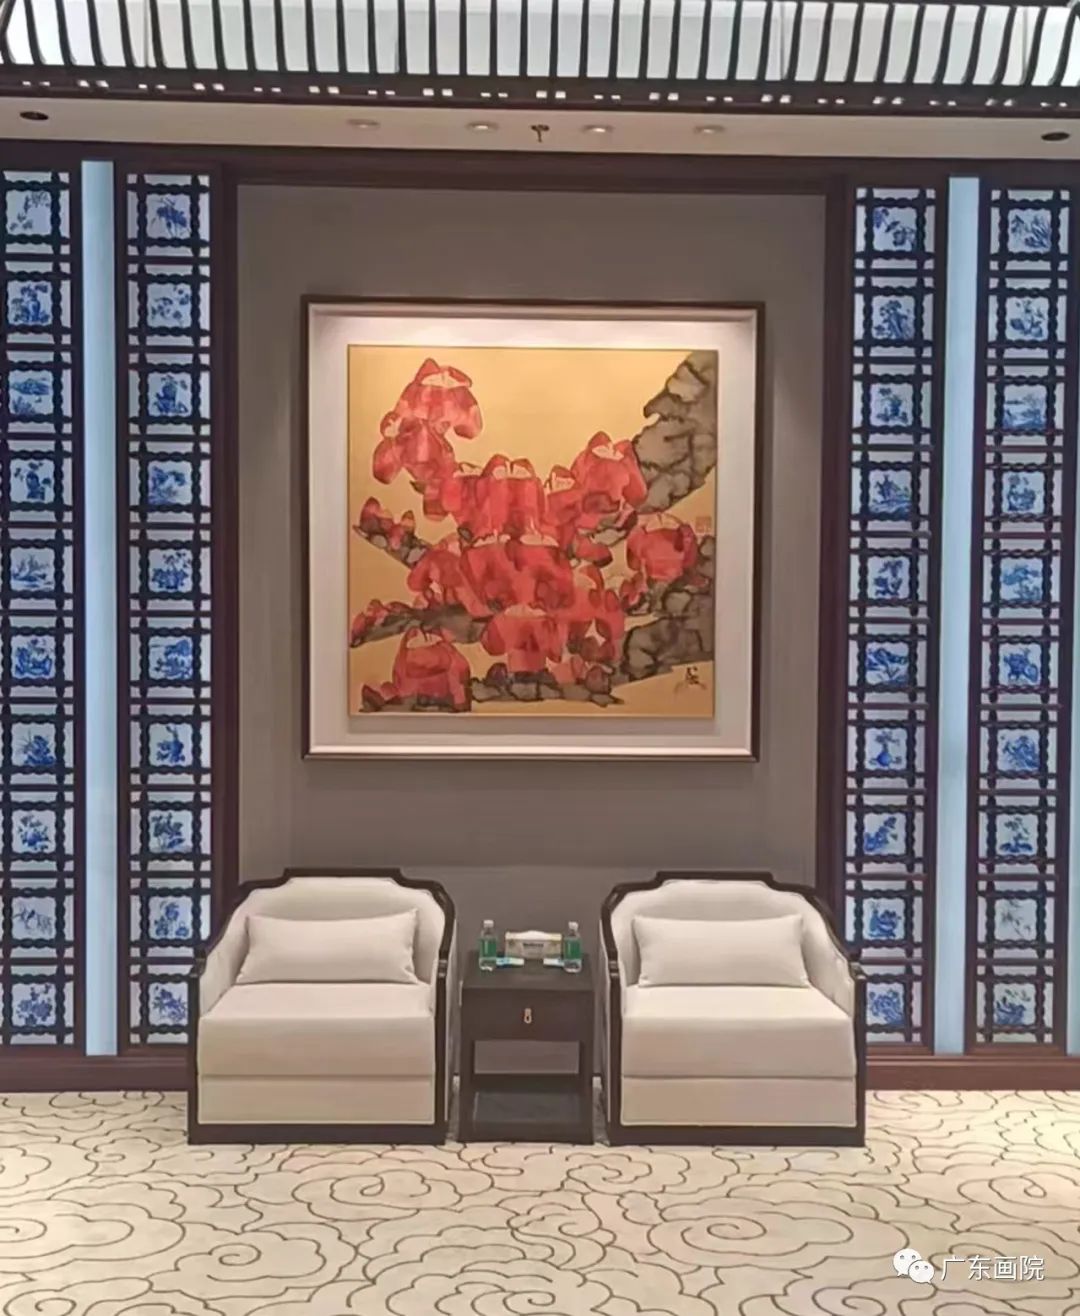 广东画院2件作品被中国国家版本馆广州分馆永久收藏陈列